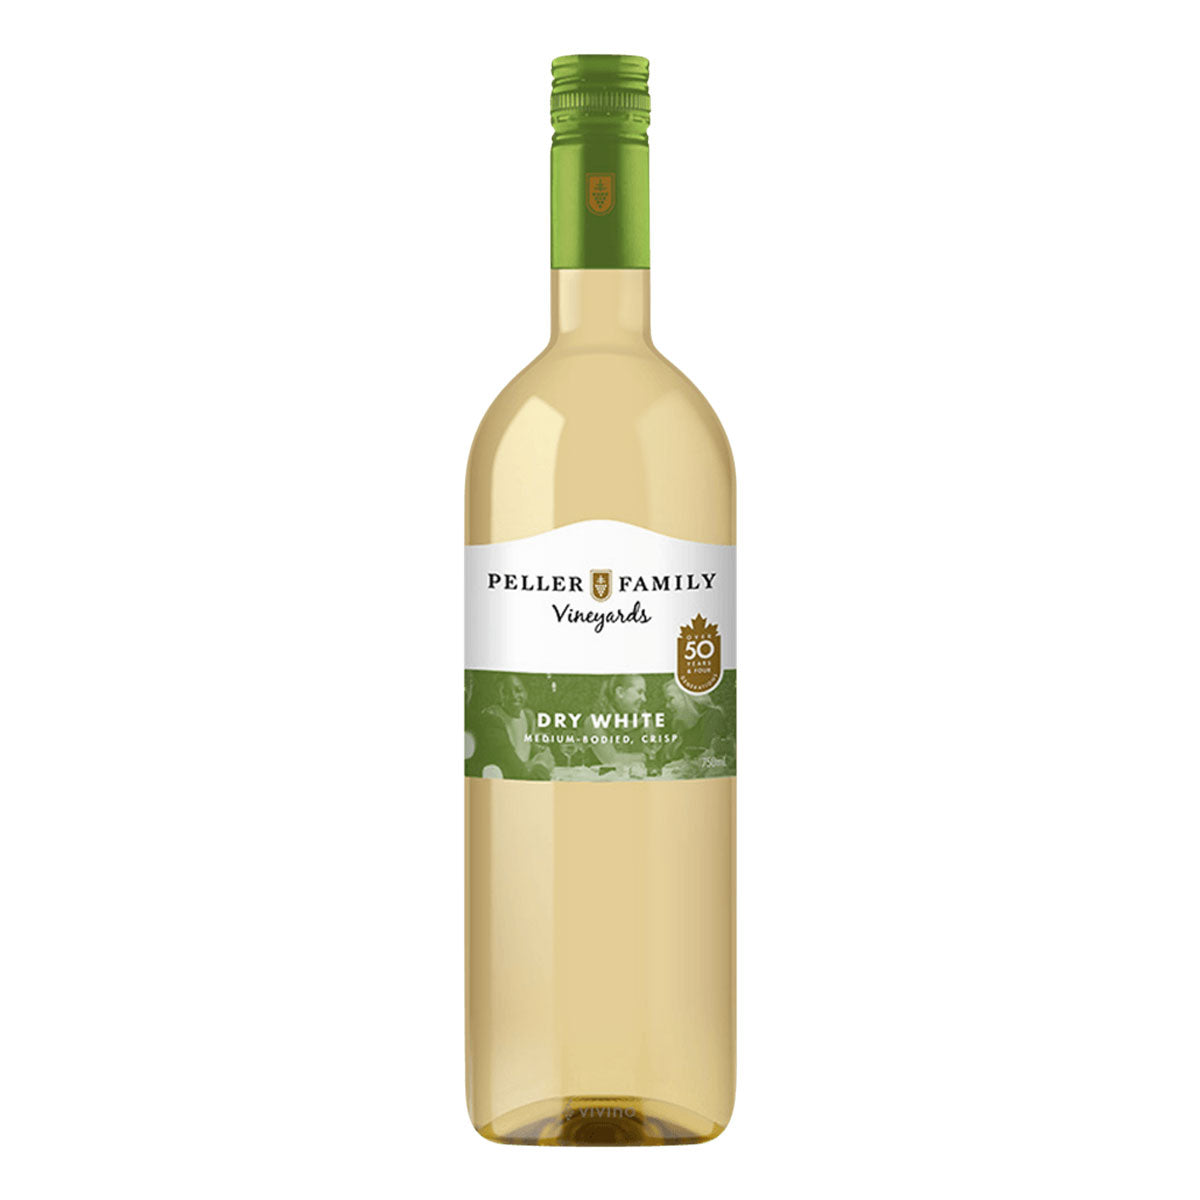 TAG Liquor Stores BC - Peller Family Vineyards Dry White 750ml